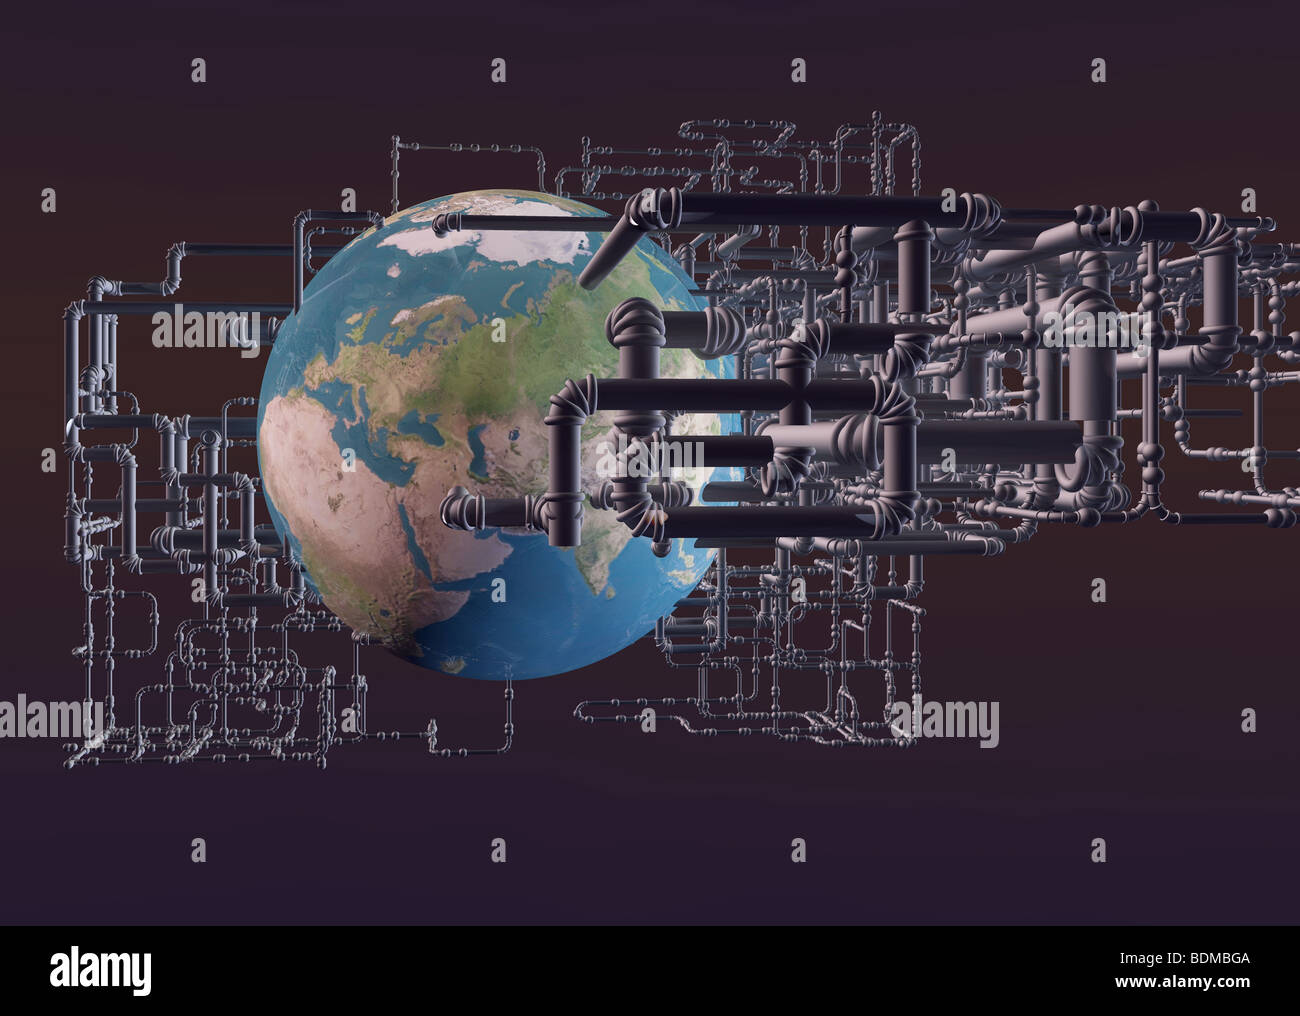 Equipo imagen gráfica del planeta tierra rodeado por una red de tuberías, sugiriendo los desechos tóxicos o refinerías de petróleo Foto de stock